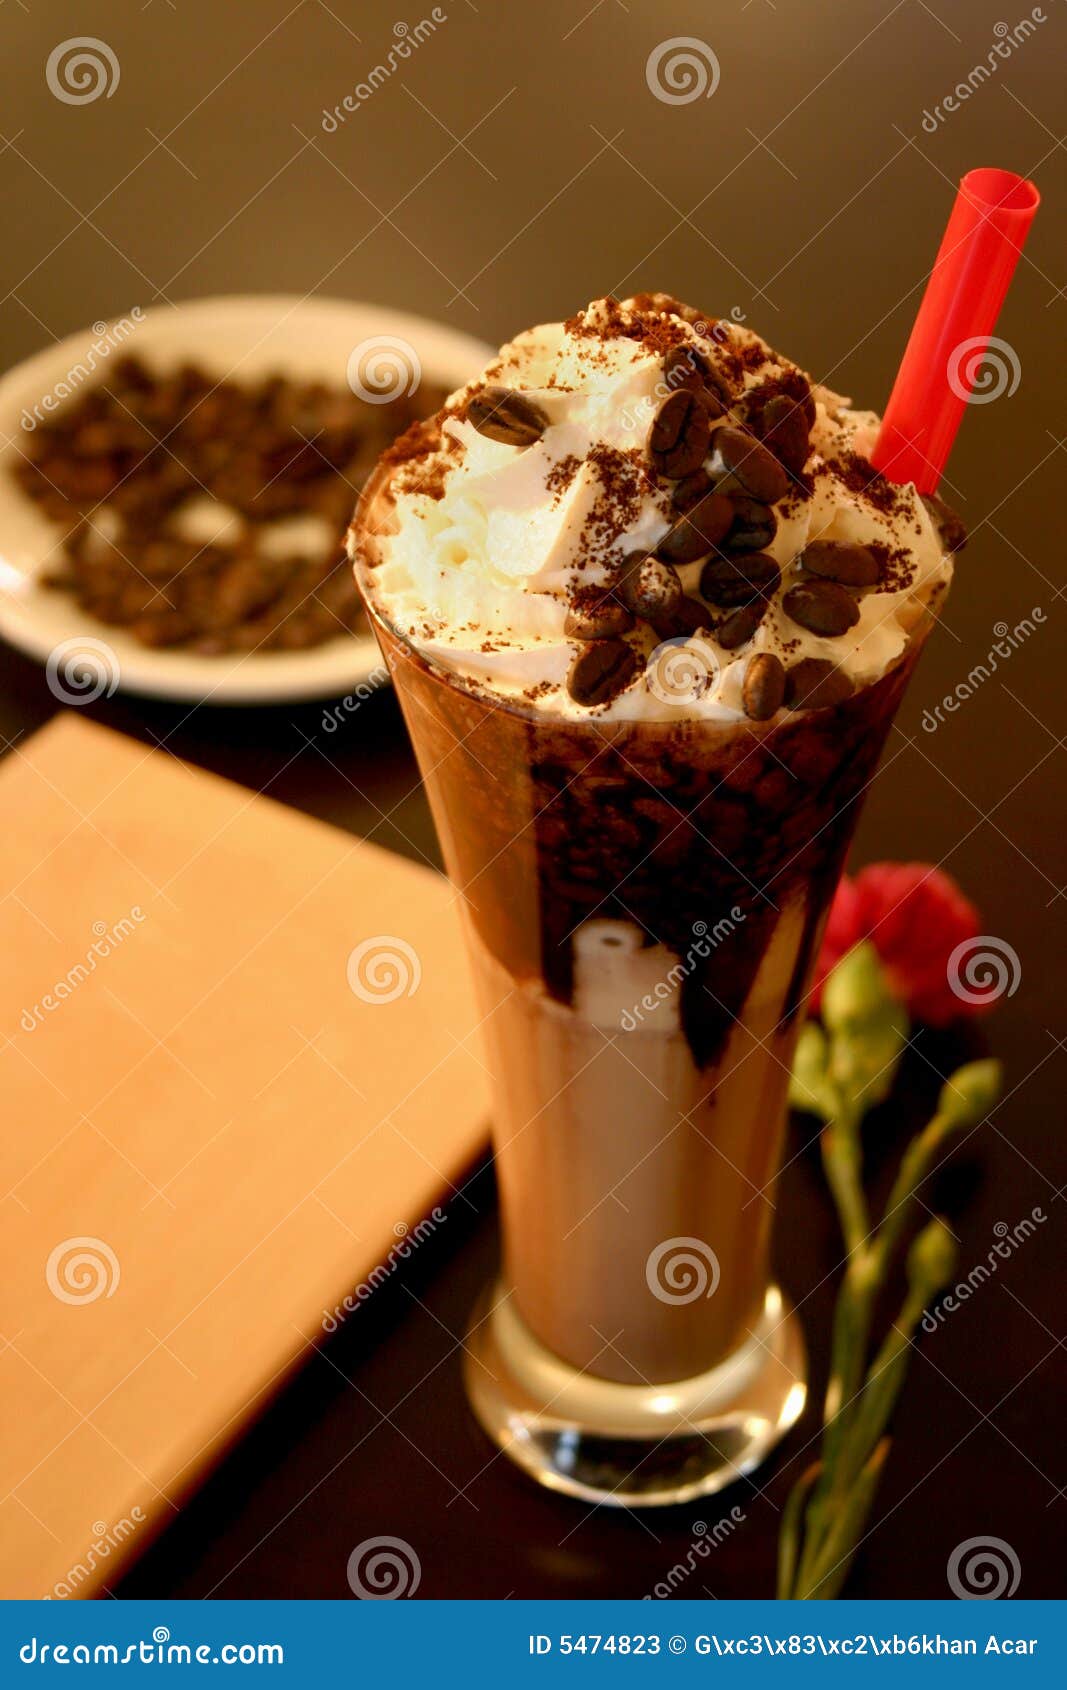 Coffee milkshake stock image. Image of flower, booklet - 5474823